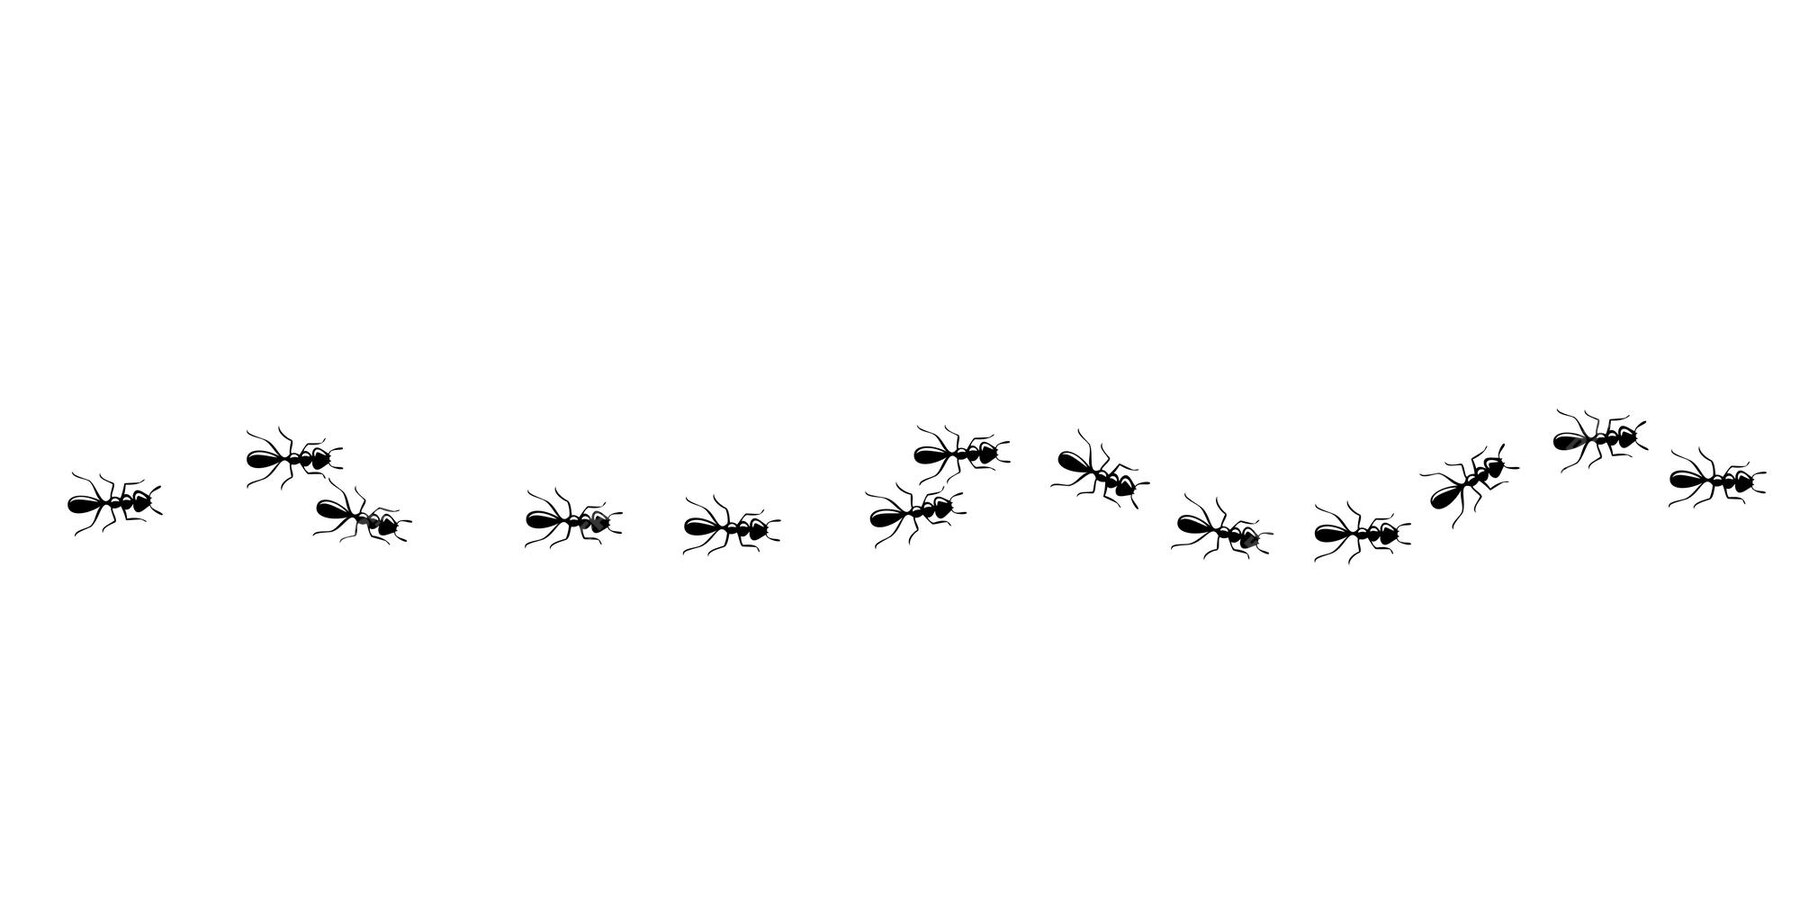 Padrão Sem Emenda De Trilha De Formigas Caminho De Formiga Isolado No Fundo Branco Ilustração 0303